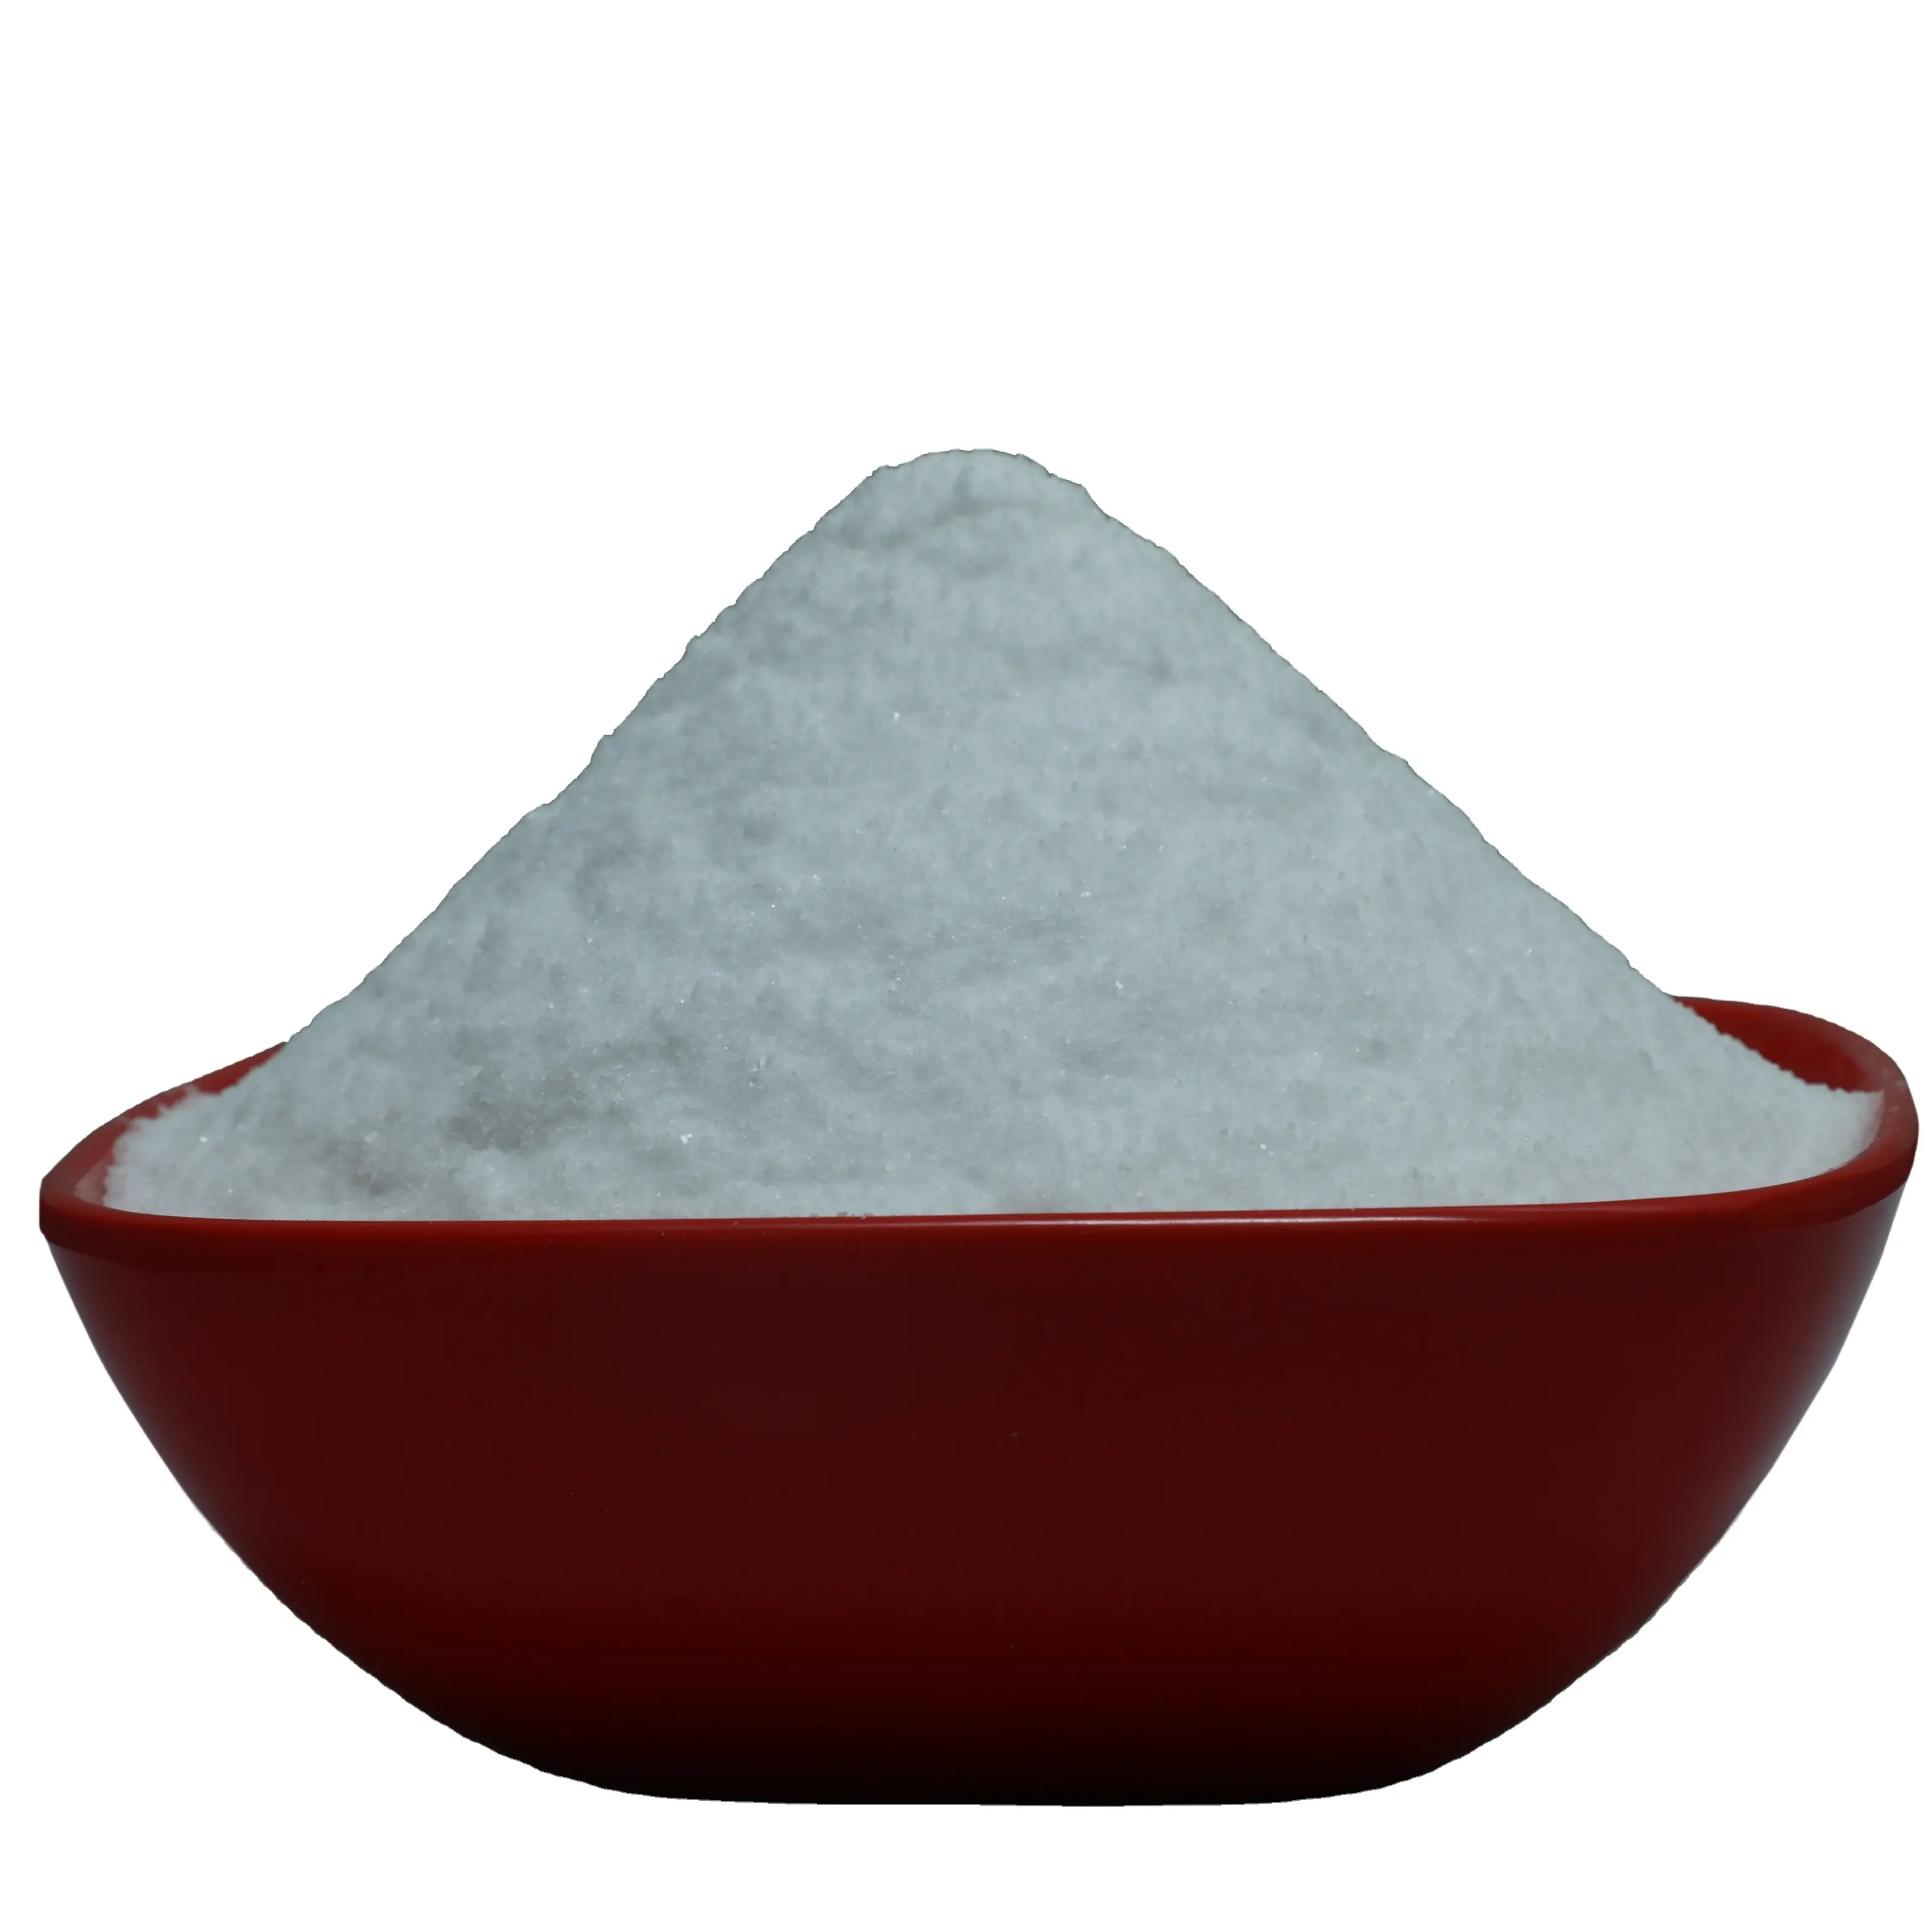 Polvo blanco de cristal de sal Industrial refinado, embalaje personalizado del proveedor indio más fiable, precio de fábrica de marca asiática